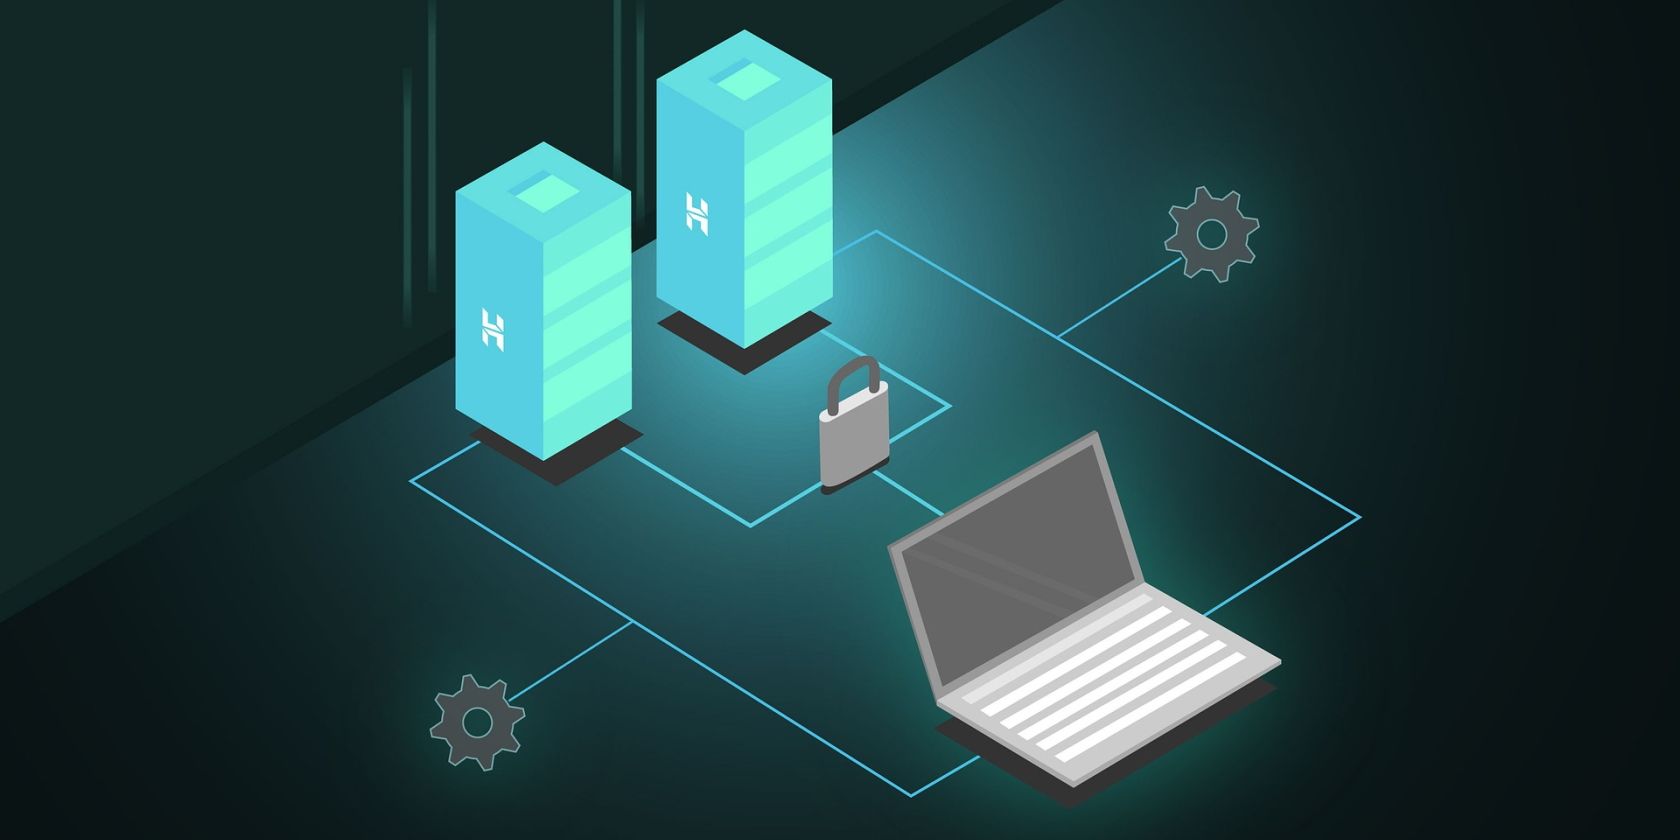 Uma ilustração mostrando dois servidores web implantados em uma rede